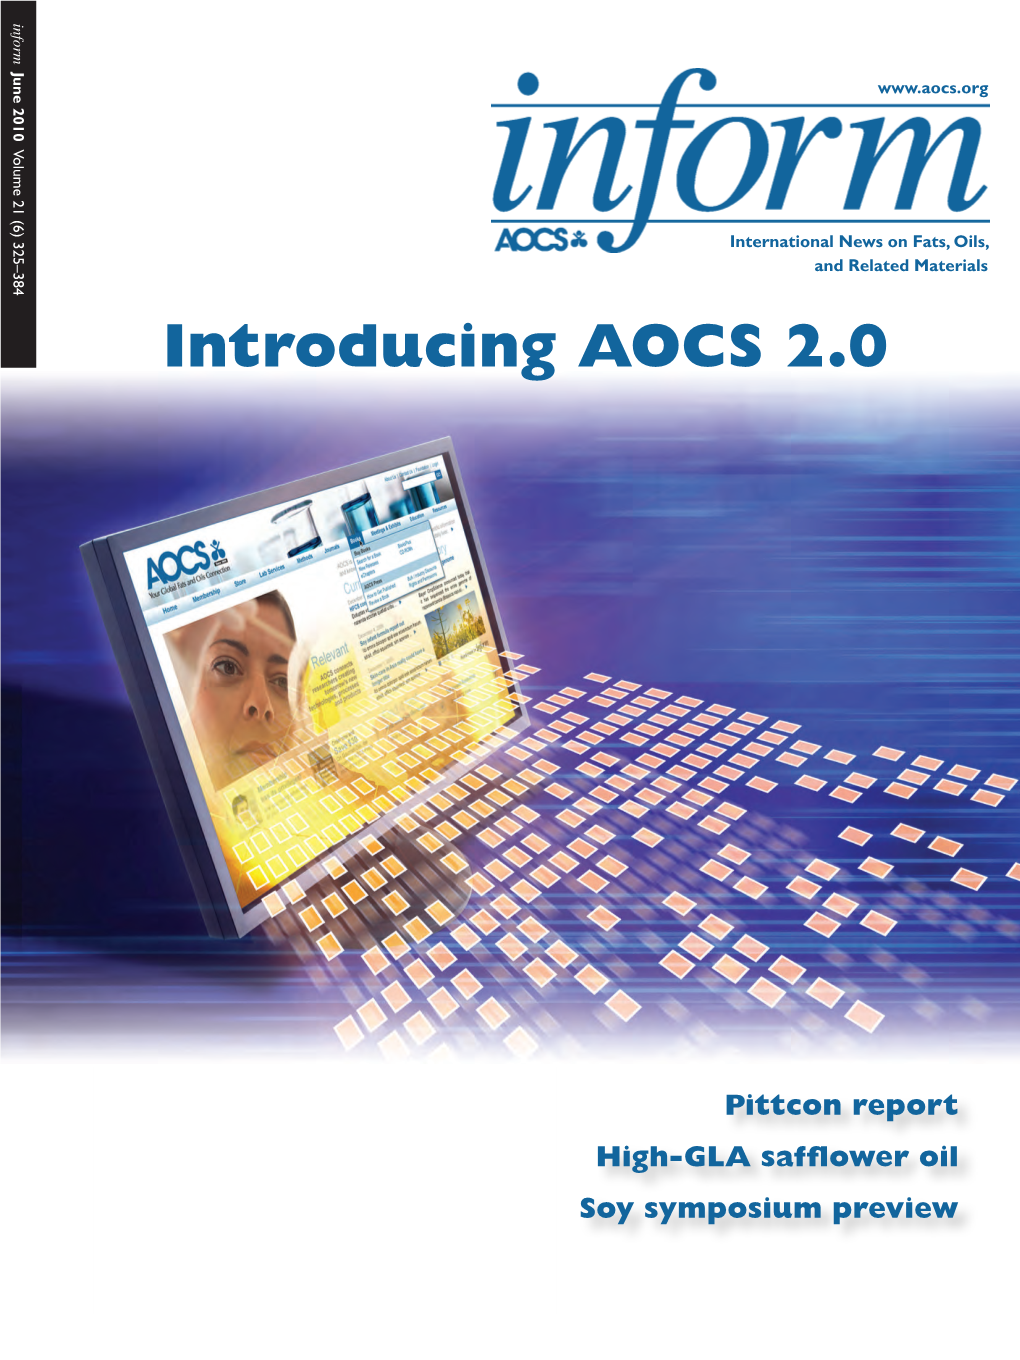 Introducing AOCS 2.0